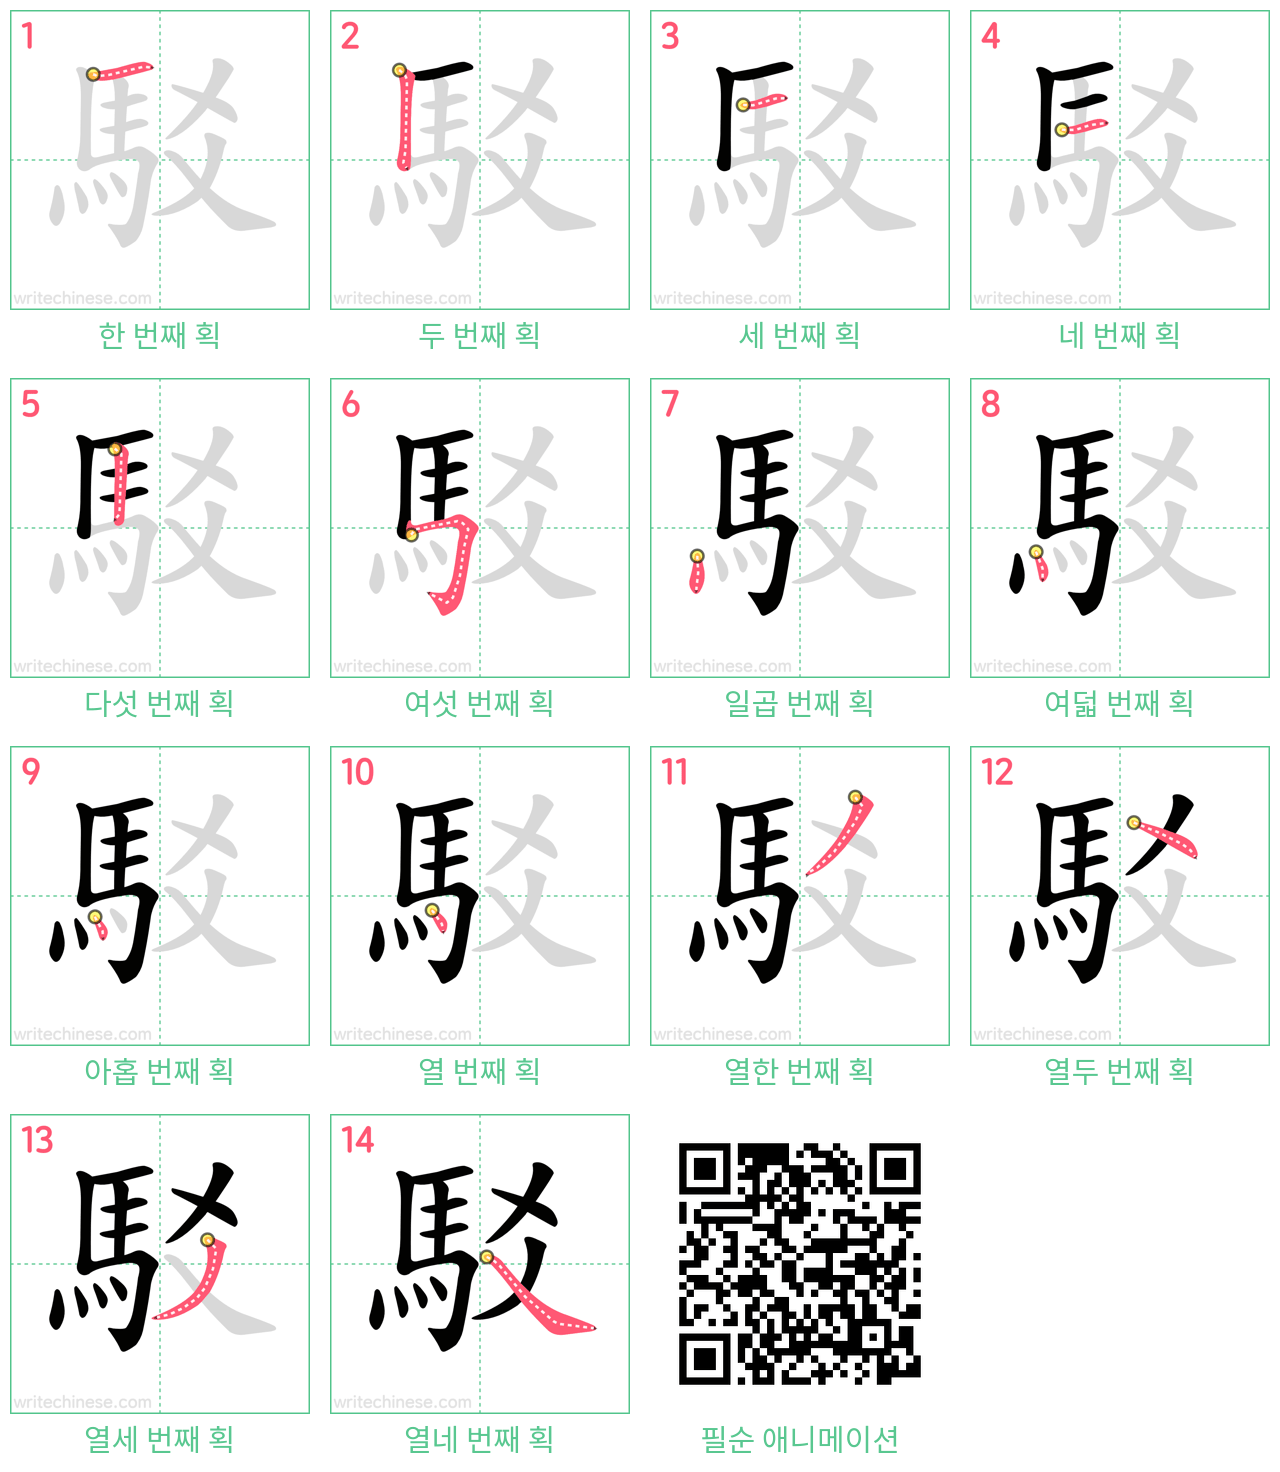 駁 step-by-step stroke order diagrams